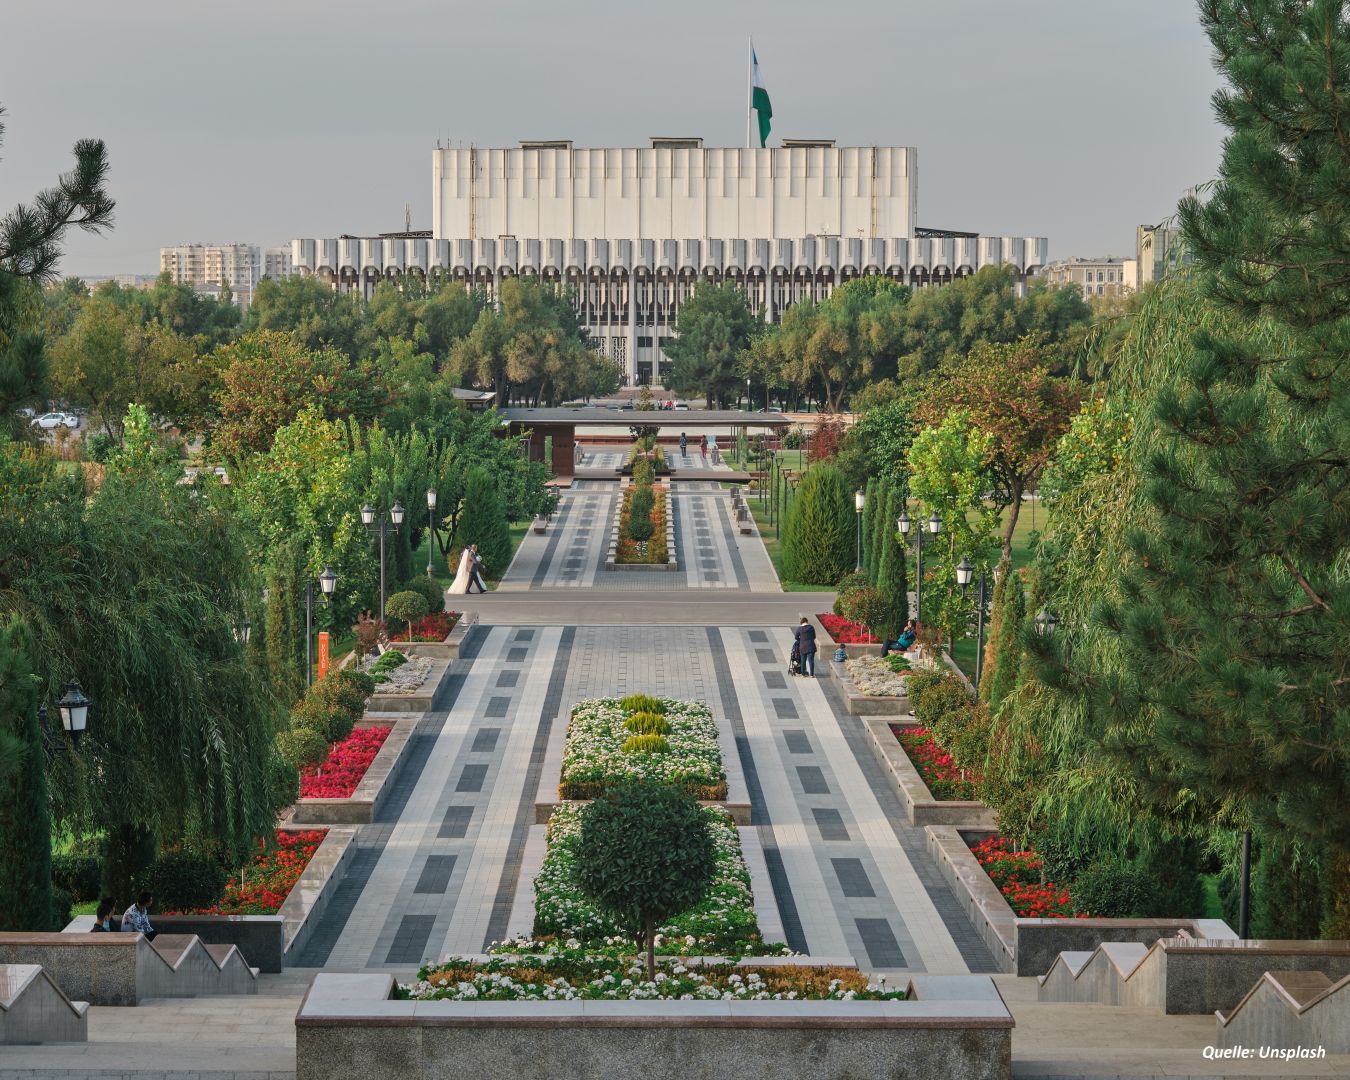 Die Asiatische Entwicklungsbank wird zur Verbesserung der Landstraßen in Usbekistan beitragen